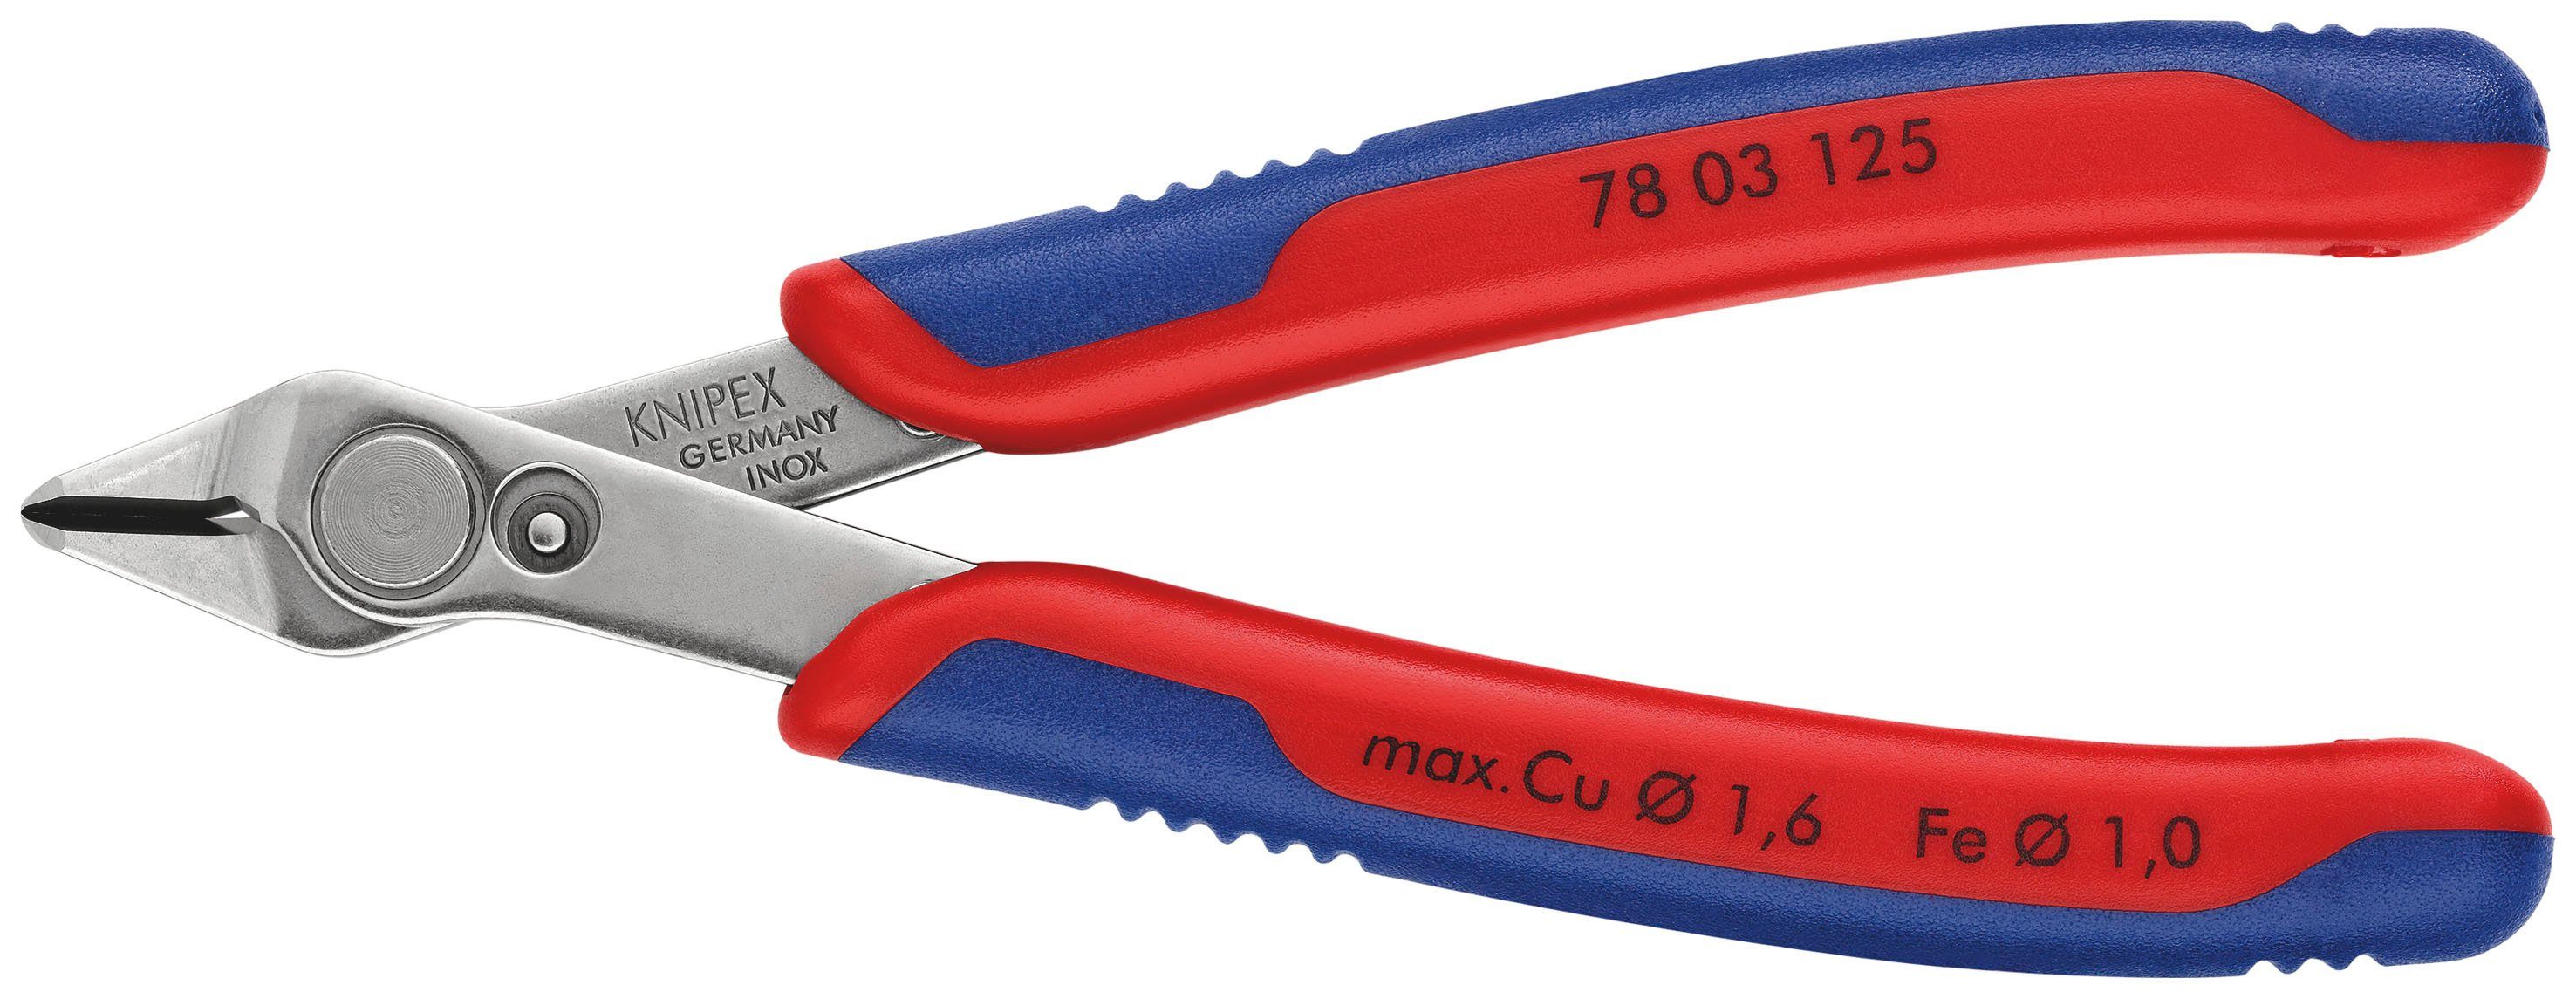 Knipex Seitenschneider 78 03 125 Electronic Super Knips®, 1-tlg., mit Mehrkomponenten-Hüllen 125 mm